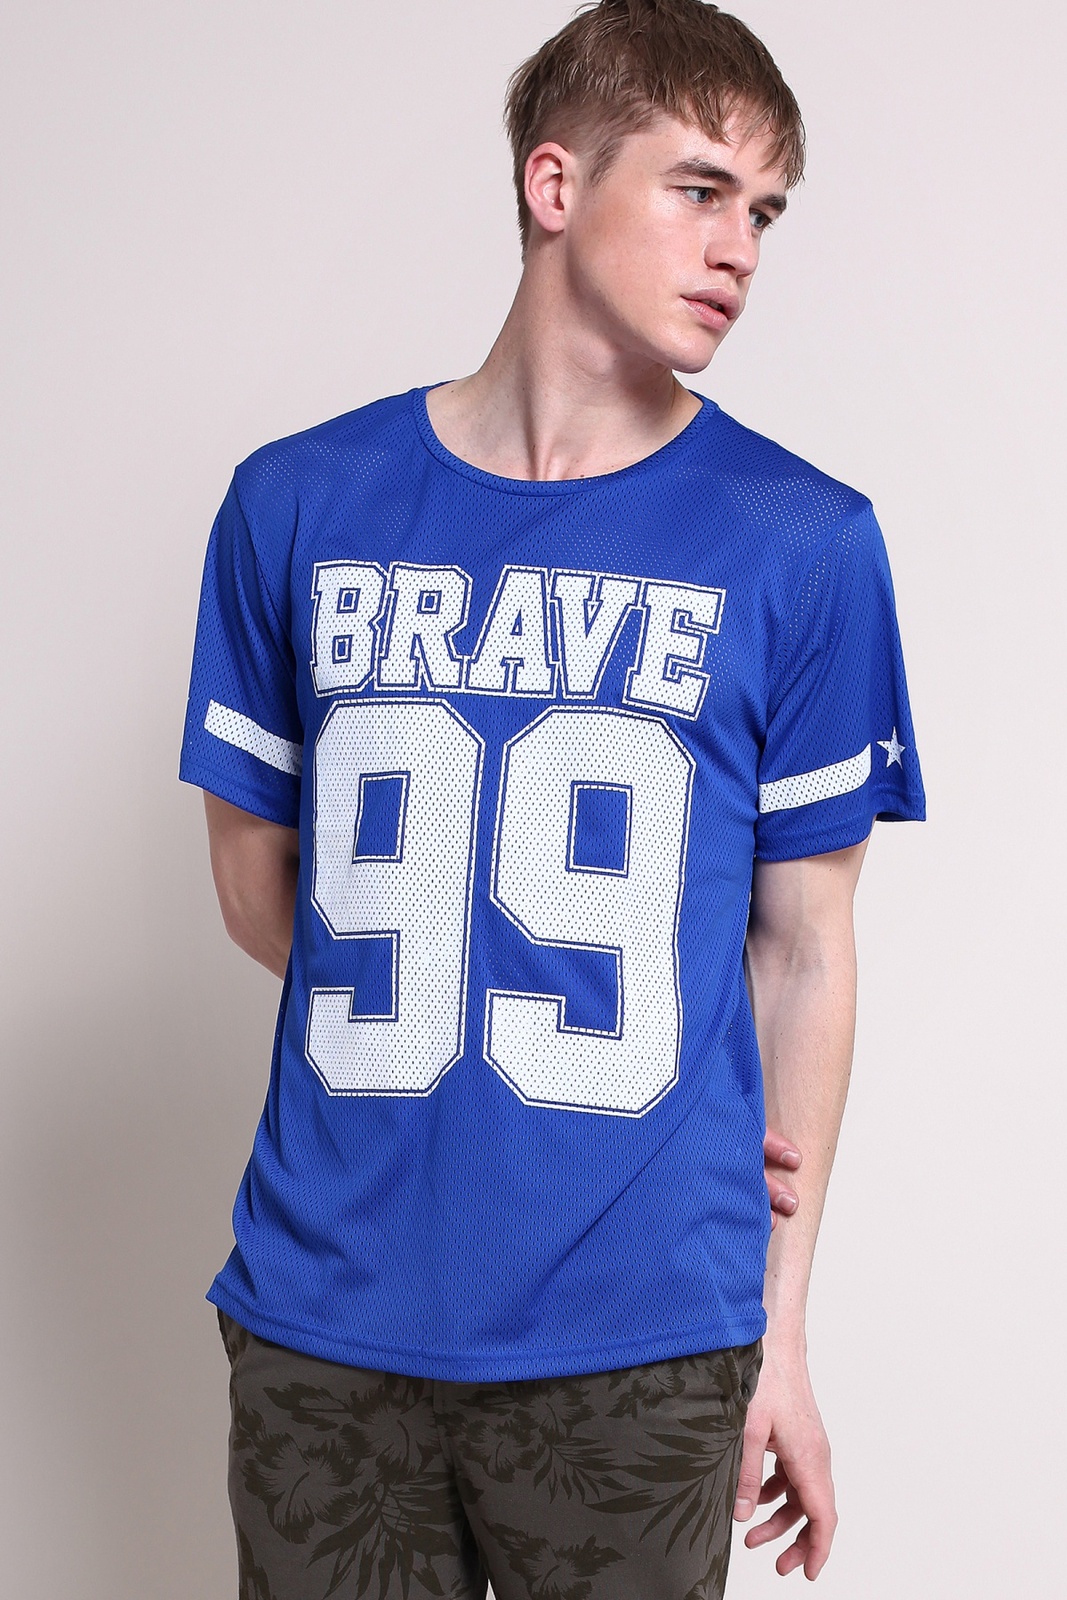 Terranova Brave 99 feliratos sportmez jellegű t-shirt fotója